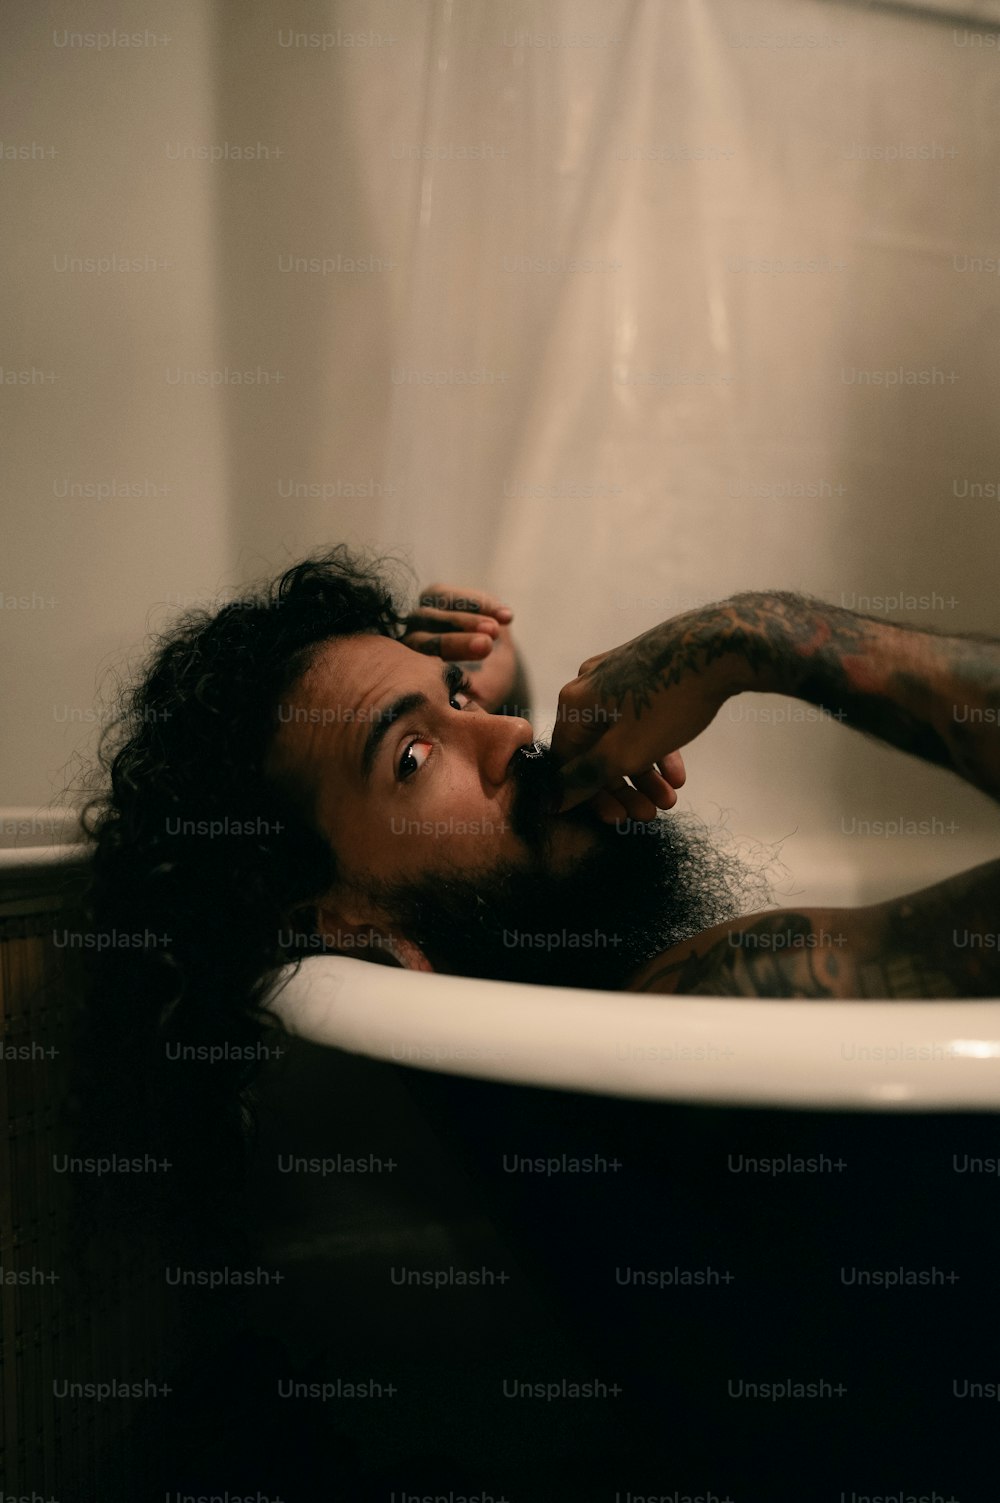 Una donna in una vasca da bagno con un tatuaggio sul suo braccio